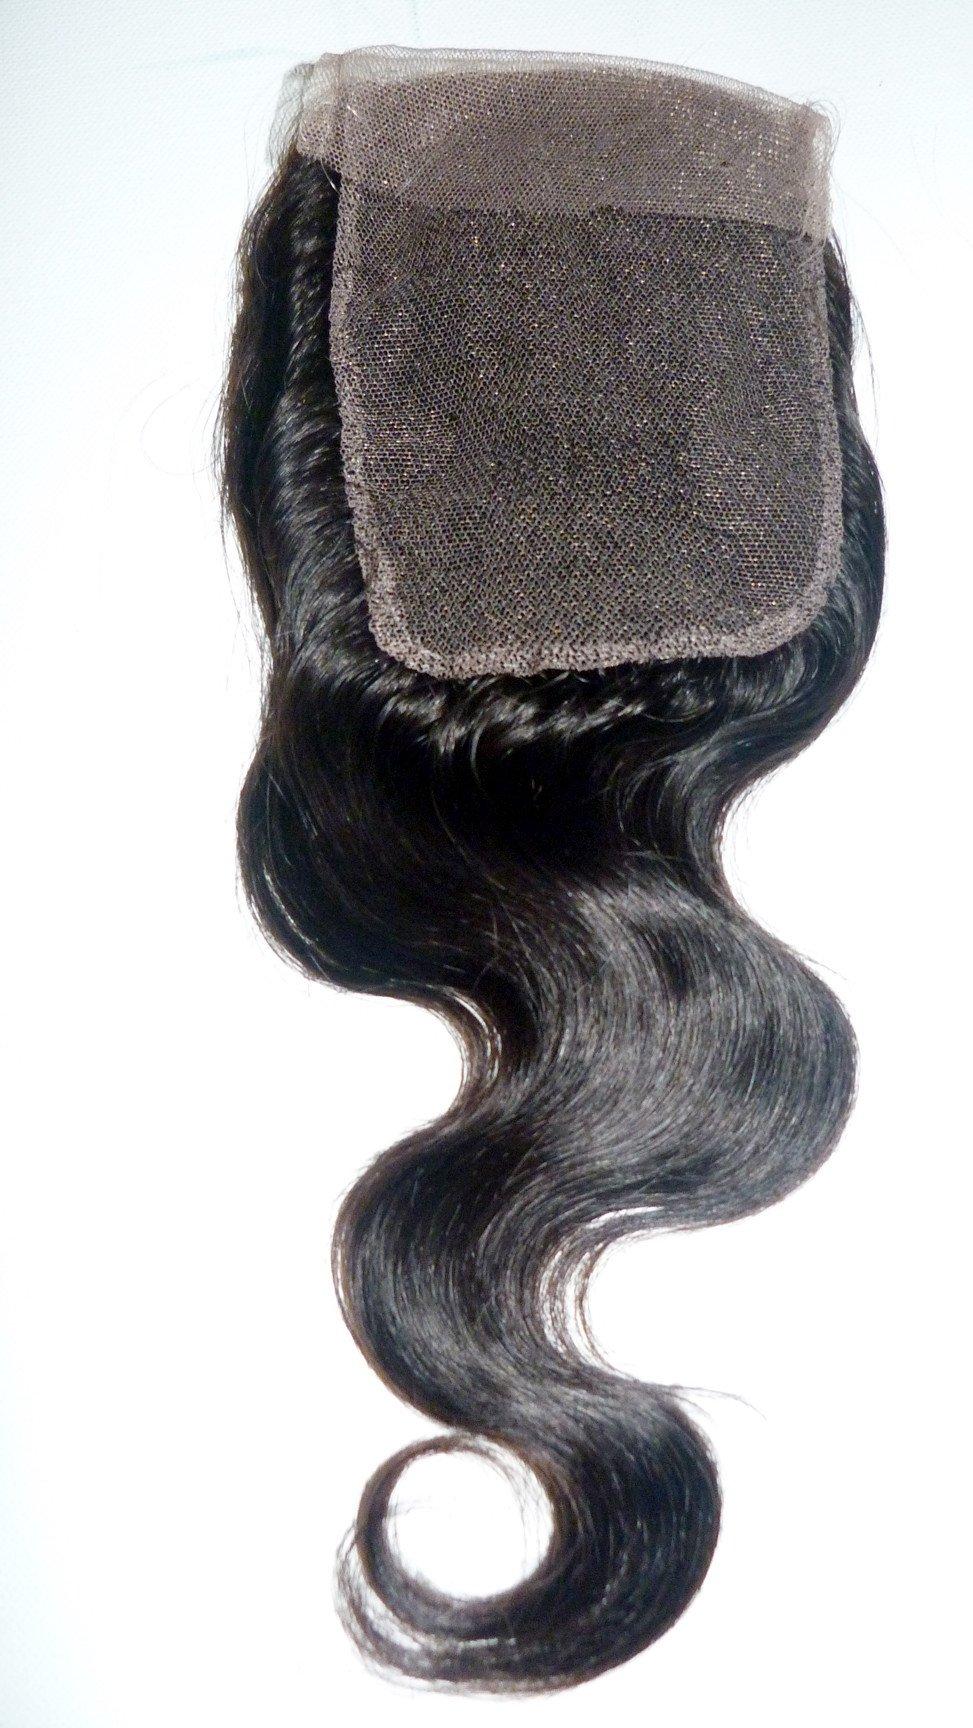 إغلاق الجزء العلوي من الدانتيل الهندي ريمي العذراء - 4 × 4 بوصة - شعر وجمال عذراء، أفضل وصلات الشعر، شعر بشري عذراء حقيقي.